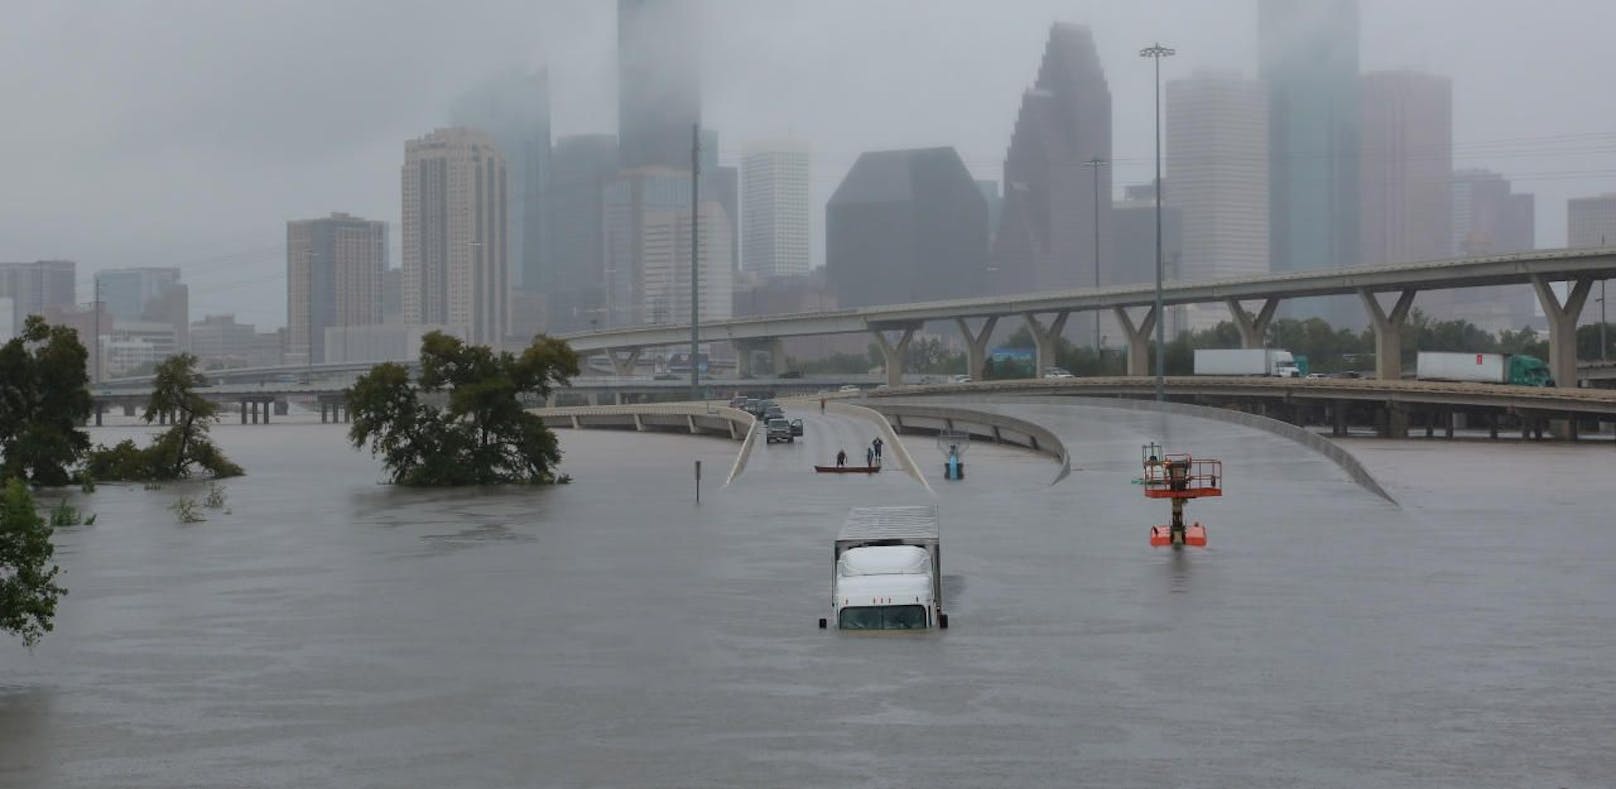 Hurrikan Harvey verwüstet Texas - und es regnet weiter